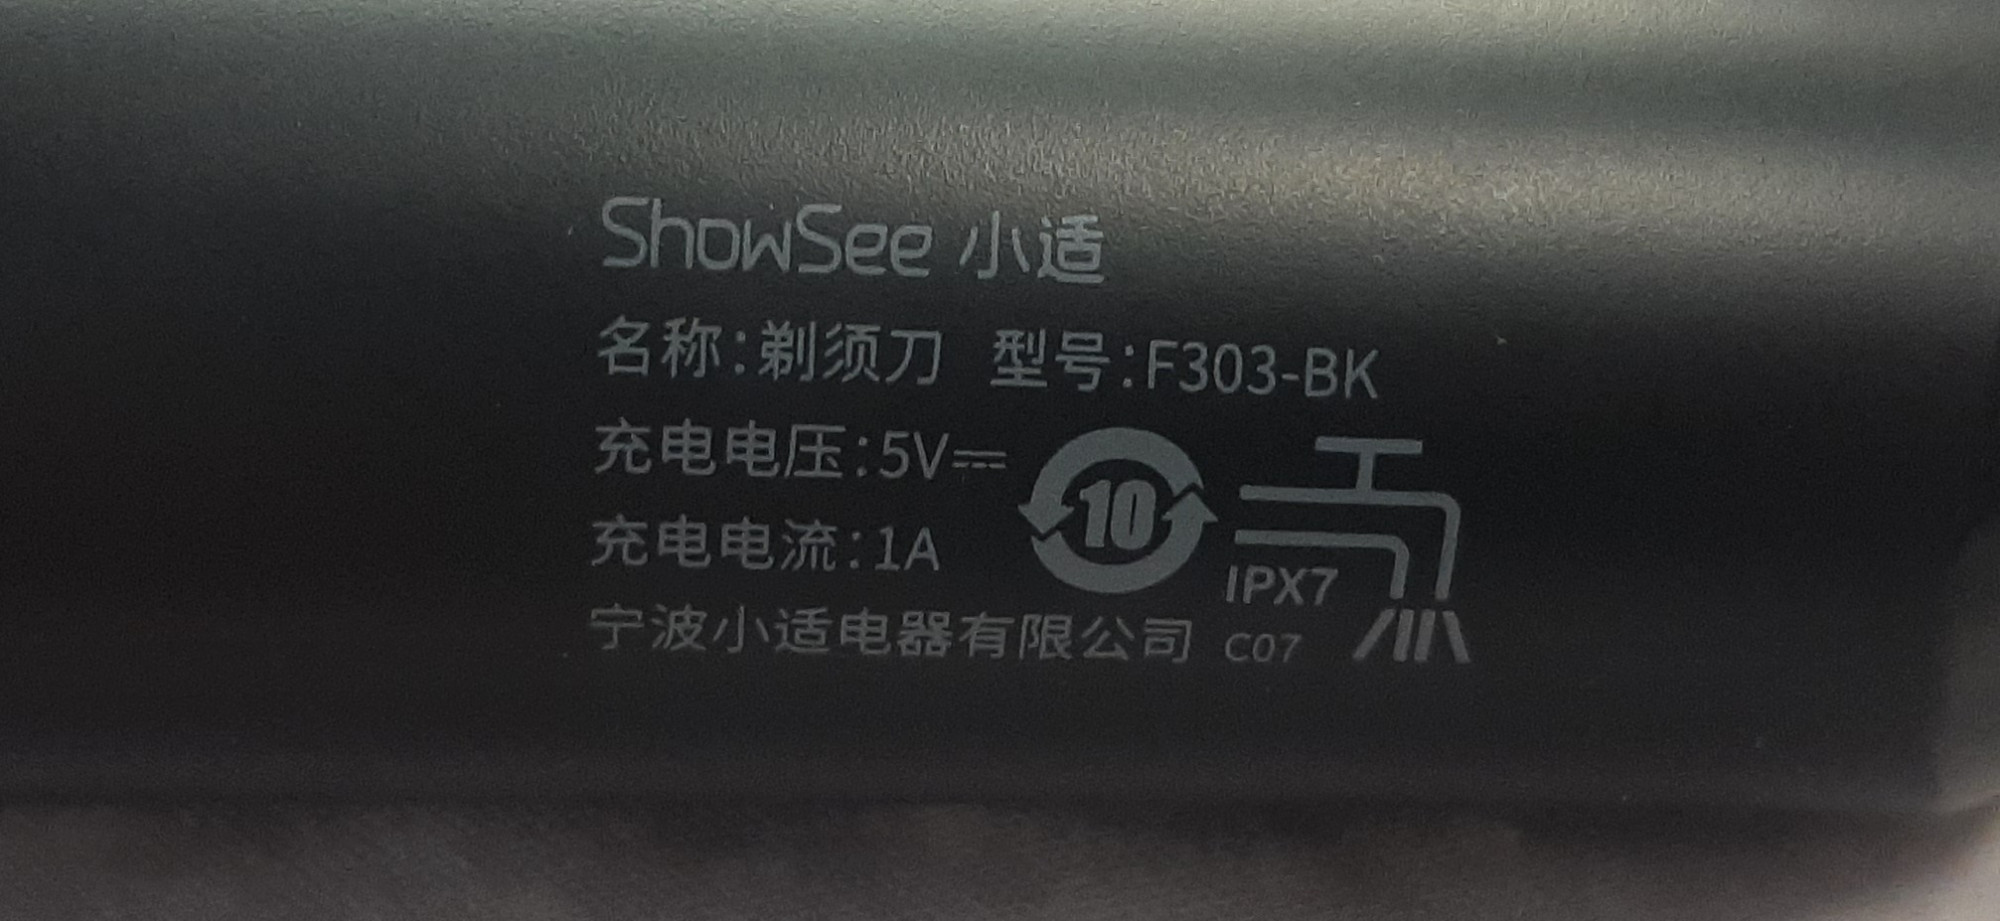 Электробритва Xiaomi ShowSee F303 3